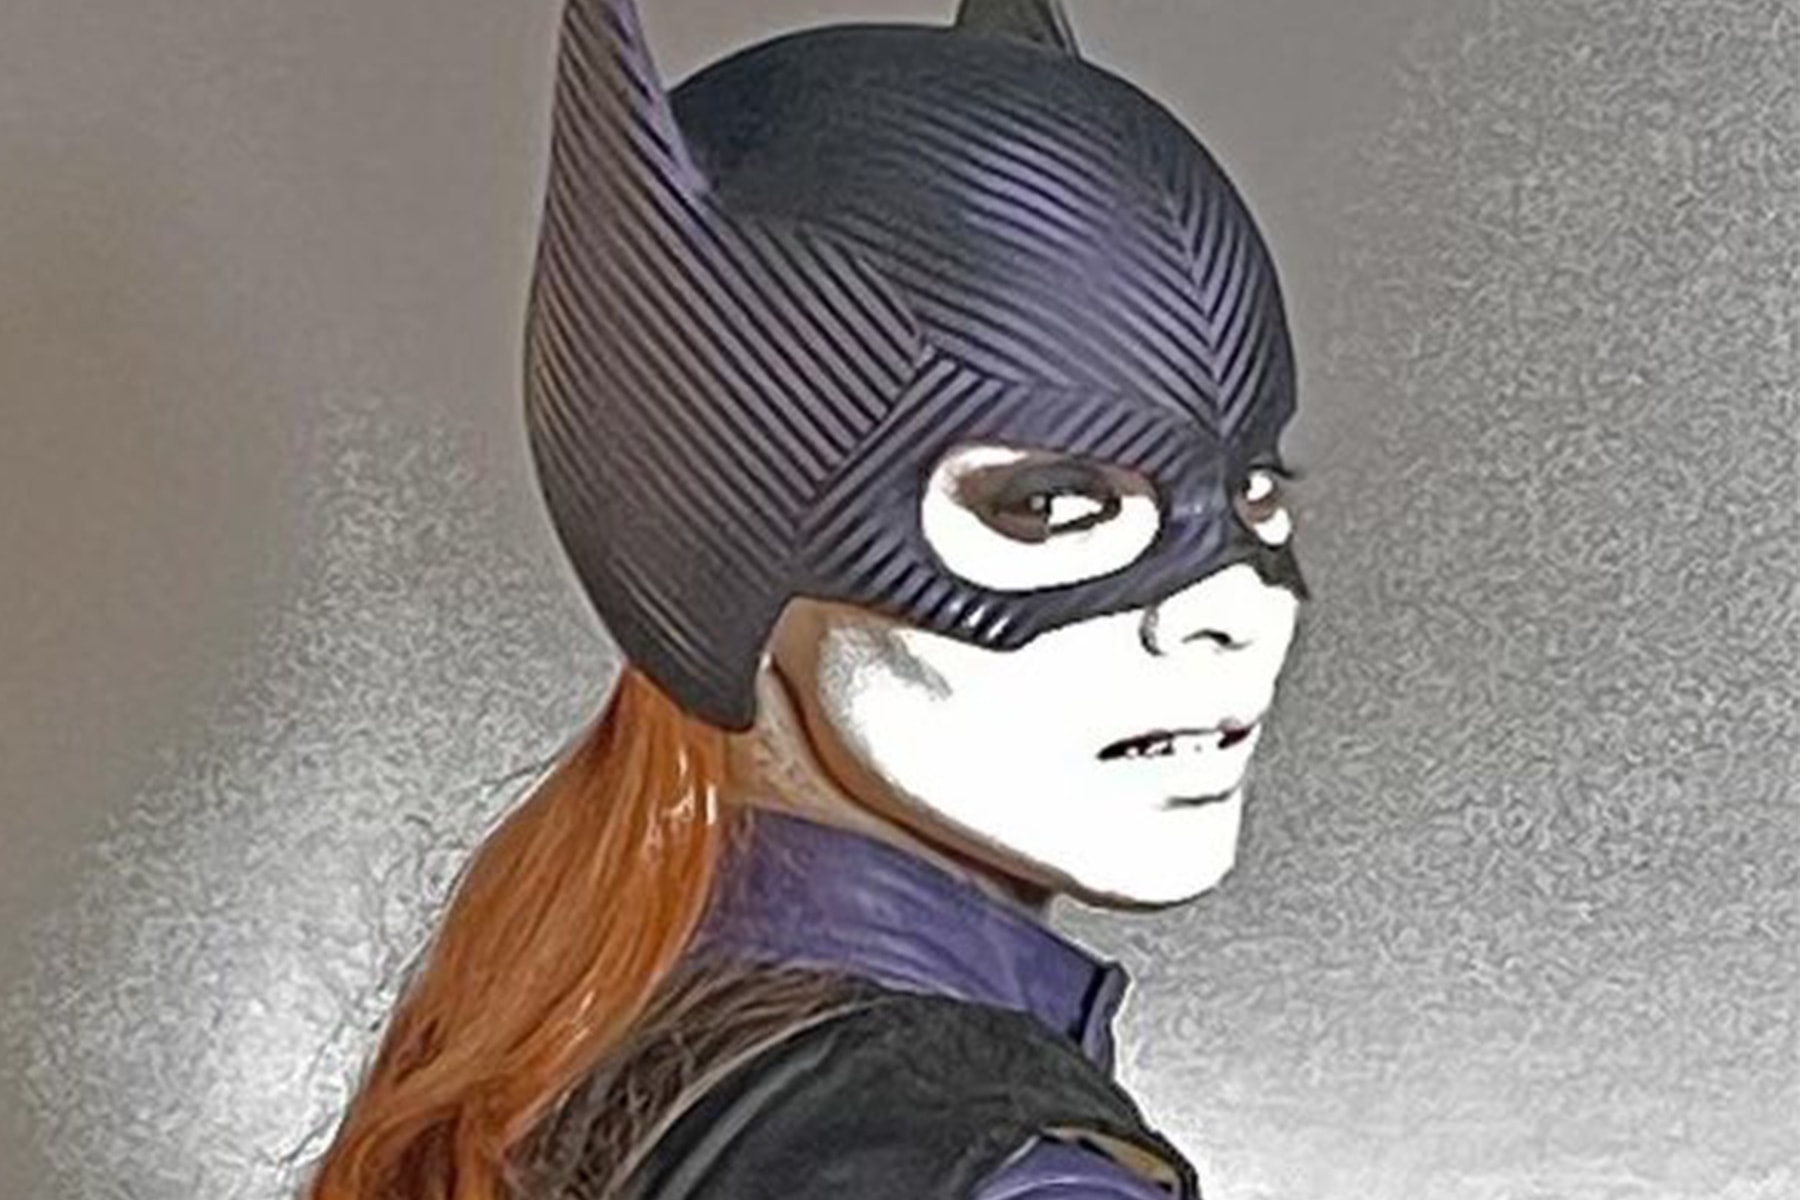 DC《蝙蝠女孩 Batgirl》主演 Leslie Grace 公開回應電影遭取消發行一事